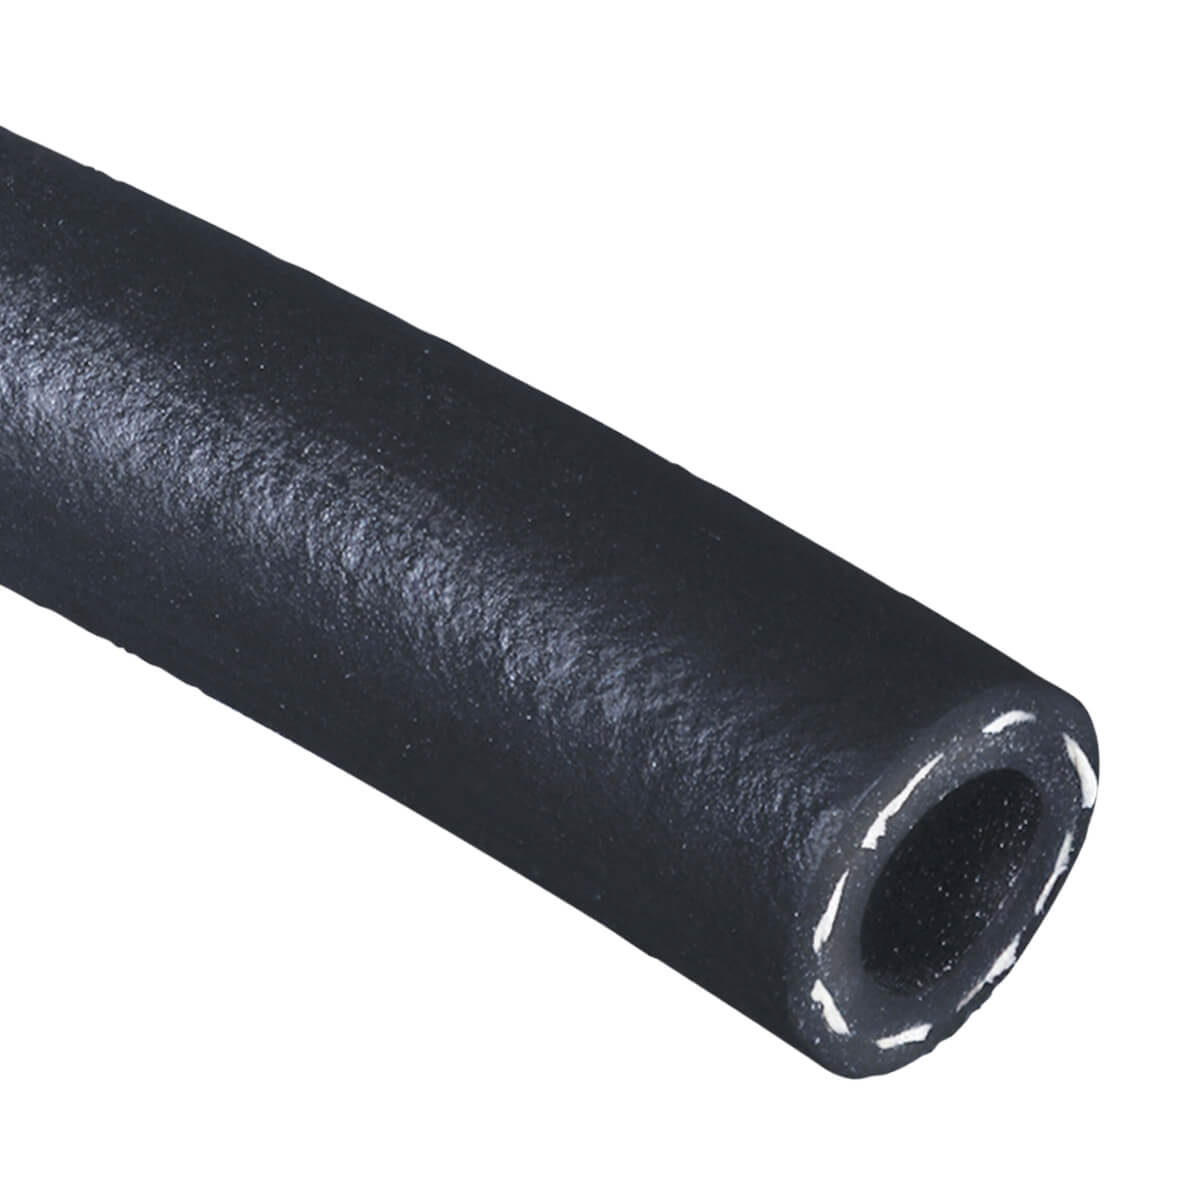 Black 200 PSI Multipurpose - AG 200 - Air & Water Hose - 1-1/2-in - Price Per ft